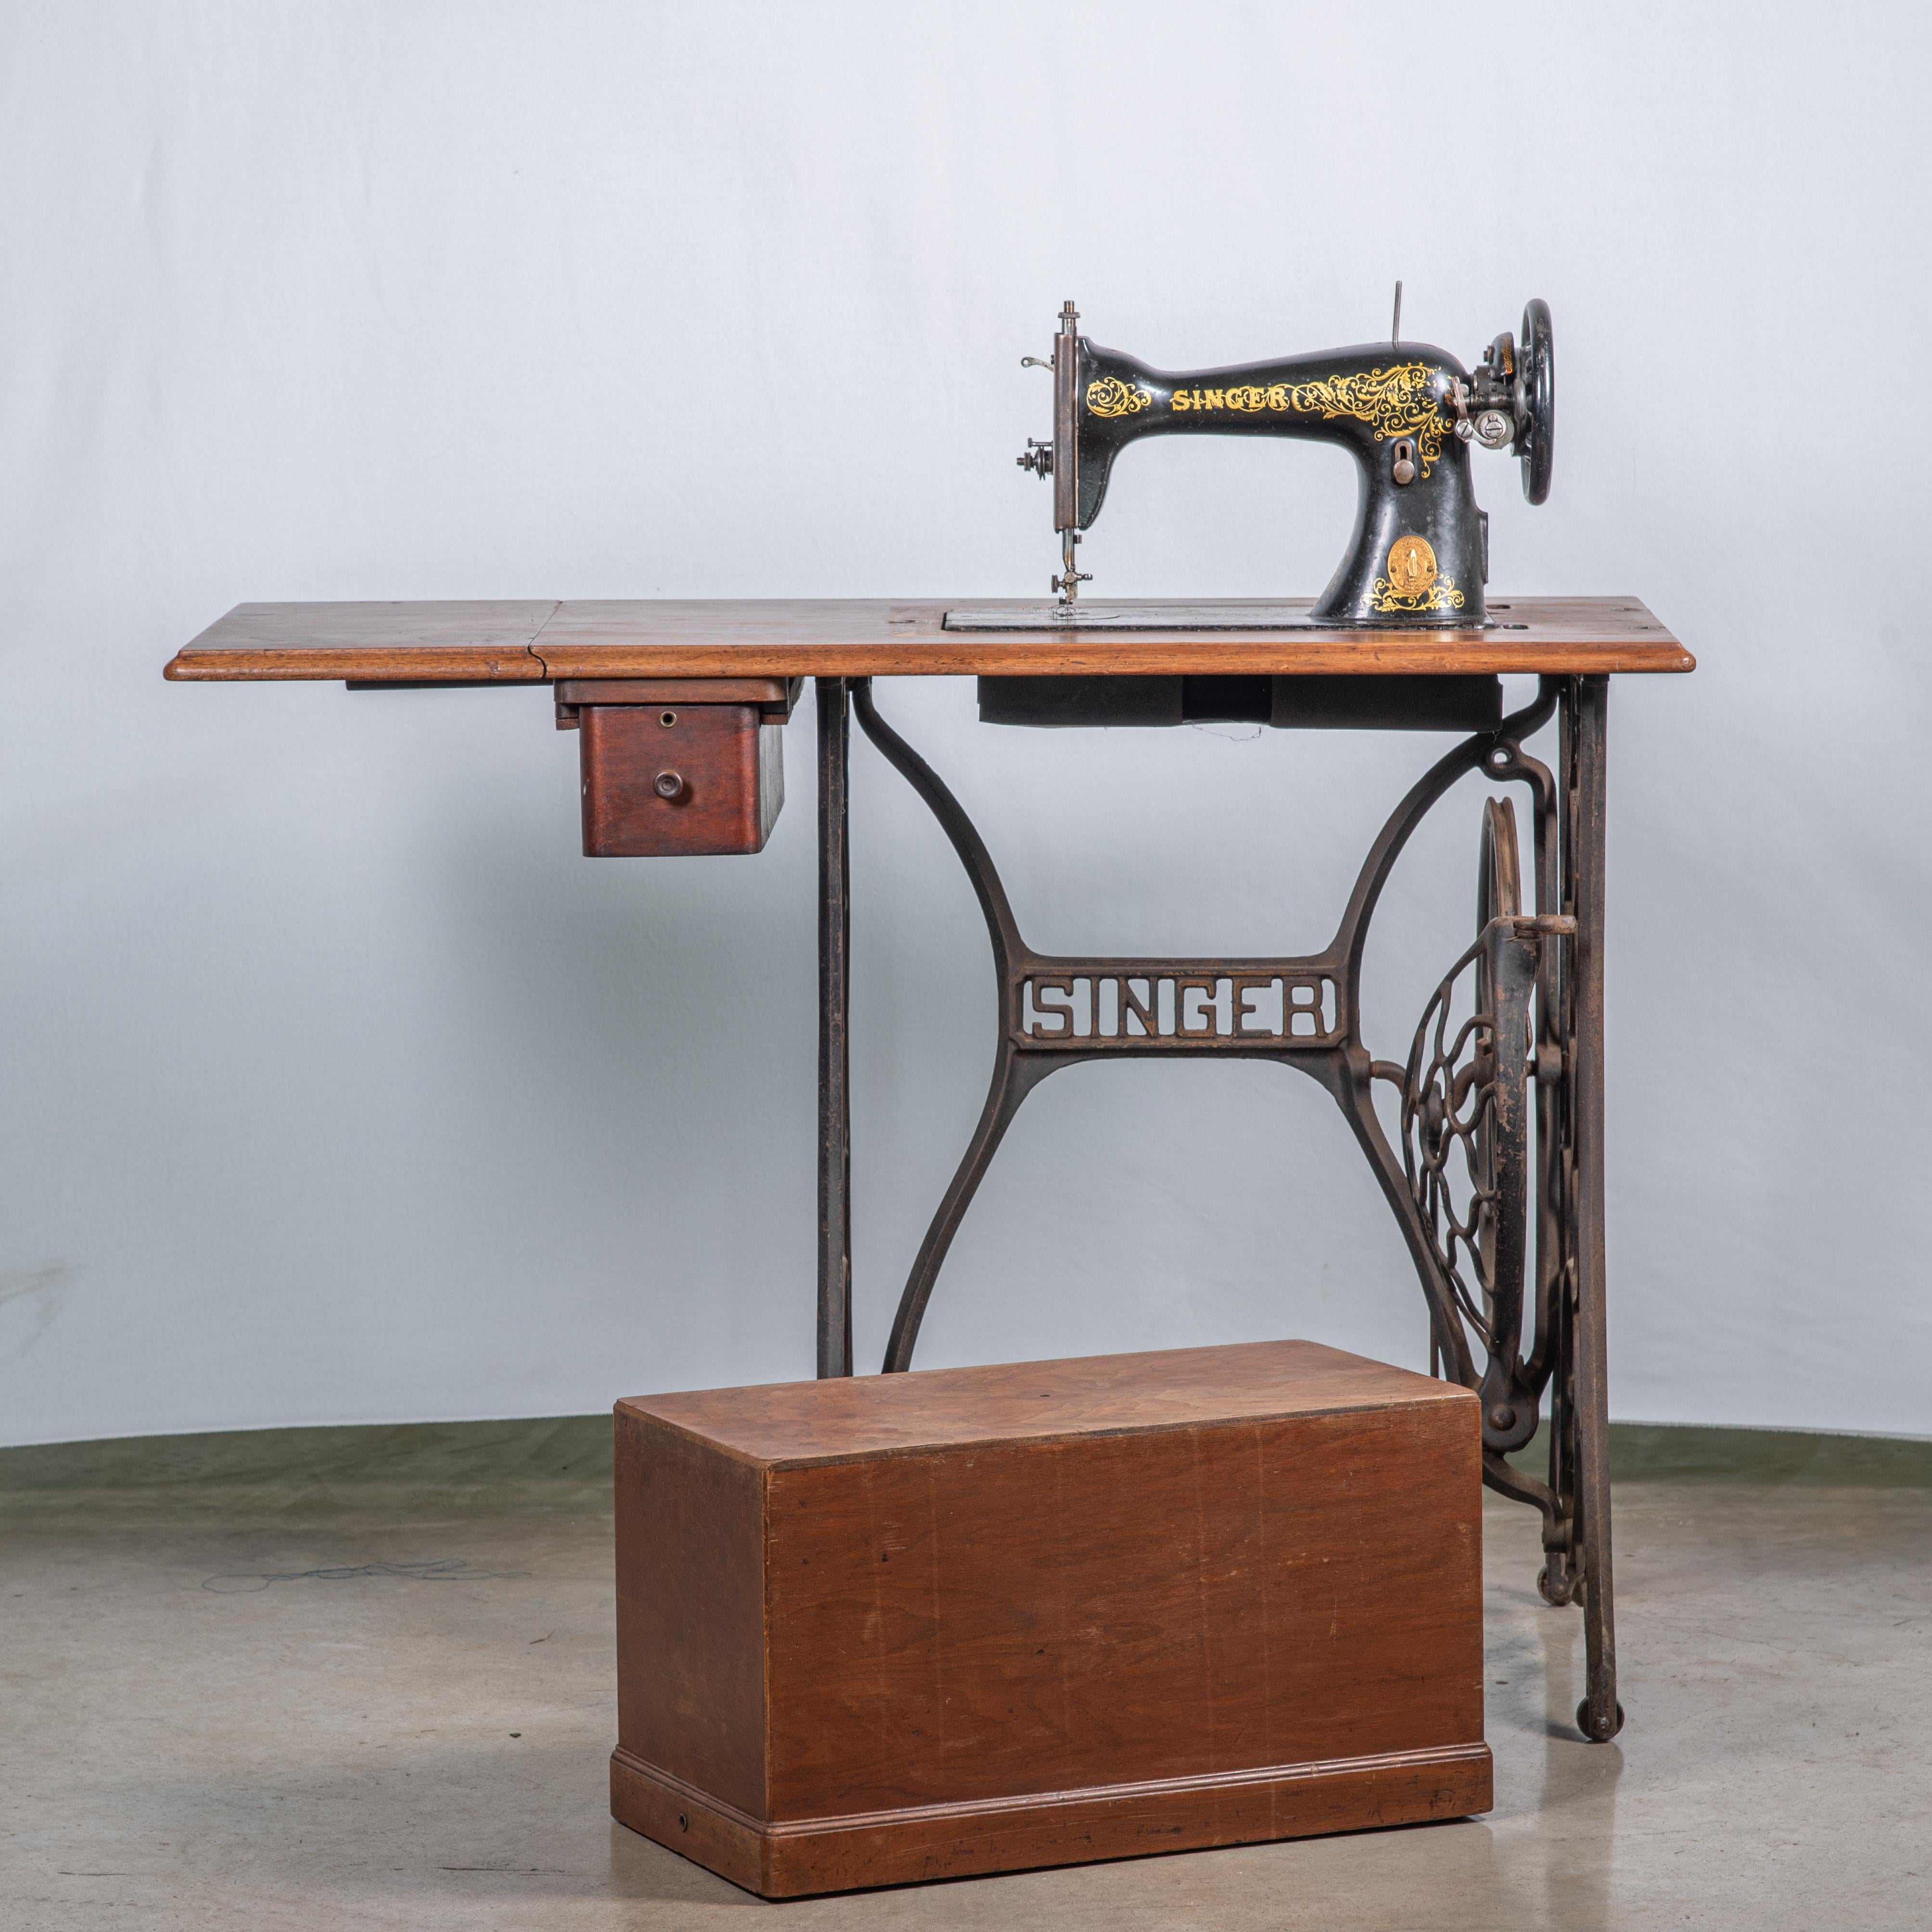 1930 singer sewing machine